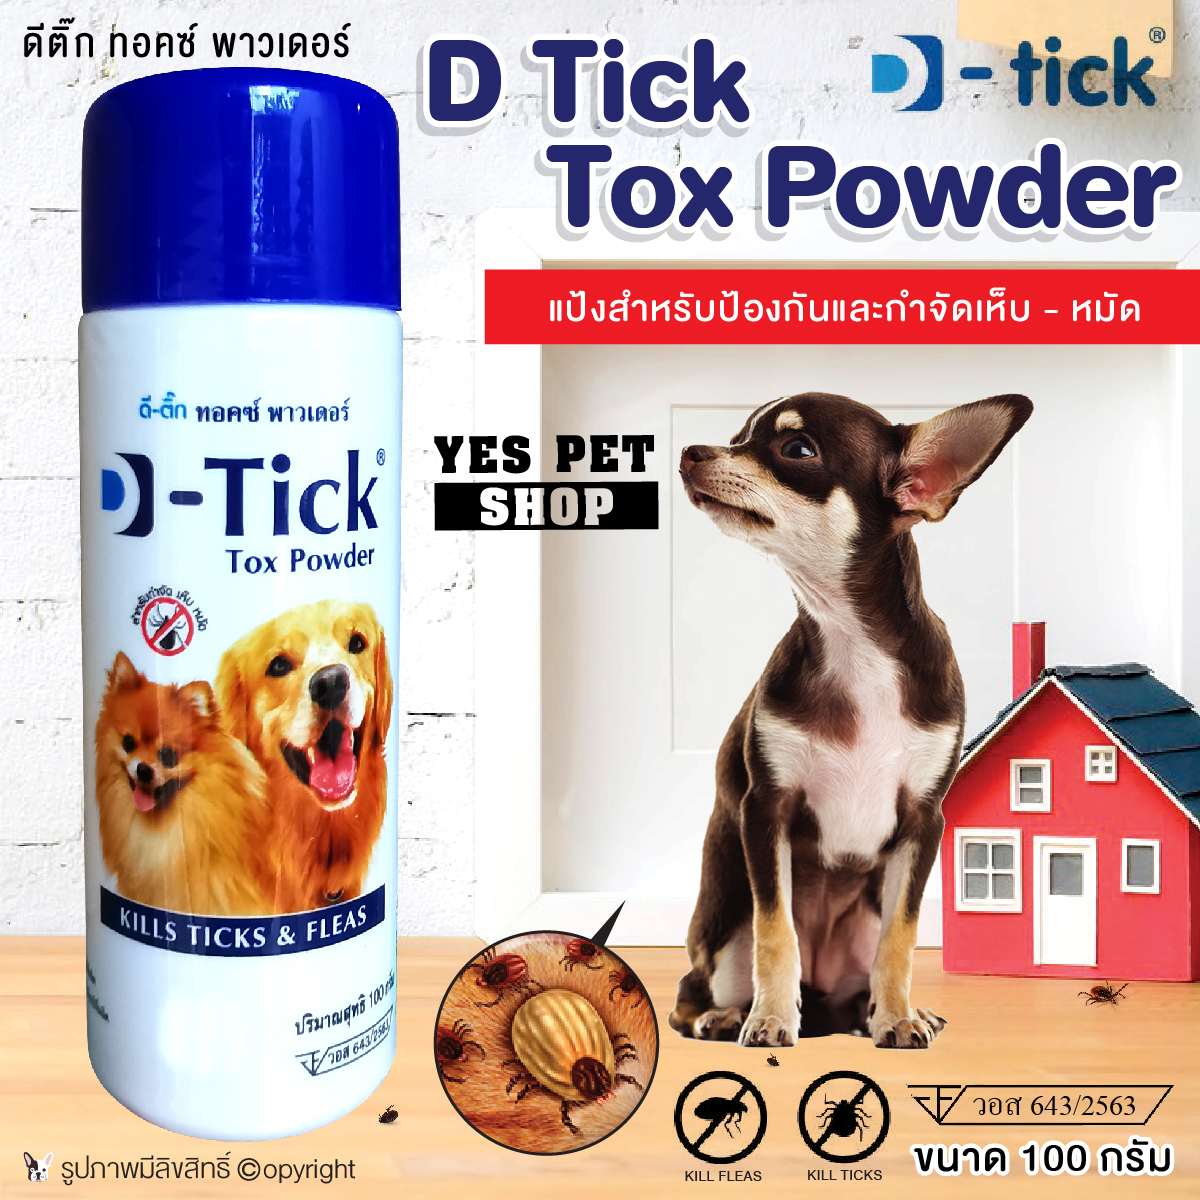 รูปภาพเพิ่มเติมเกี่ยวกับ D-Tick Tox Powder  ป้องกันเห็บ-หมัด แป้งโรย กำจัดเห็บ-หมัด ผลิตภัณฑ์กำจัดเห็บ-หมัด สำหรับสุนัข แมว ขนาด 100 กรัม. โดย YET PET SHOP